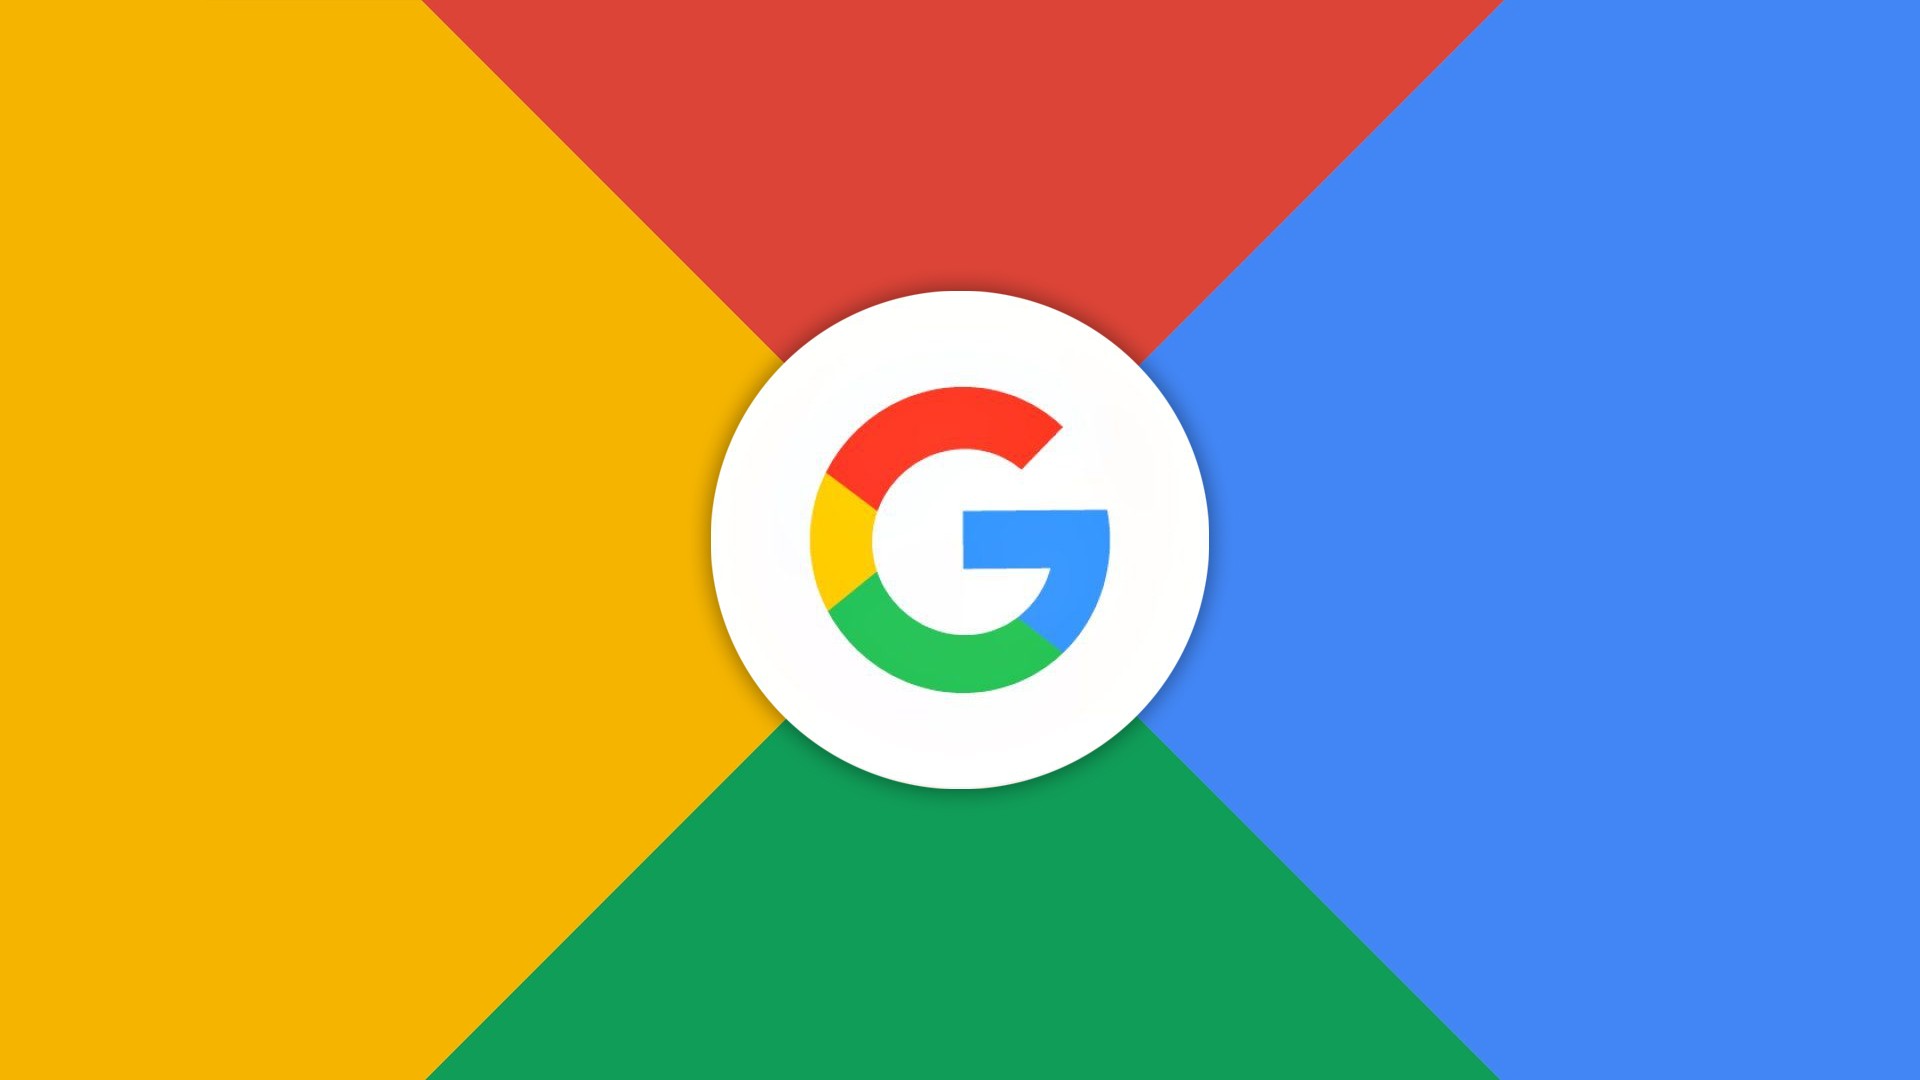 Busca do Google atualizada com correo para bug no navegador integrado